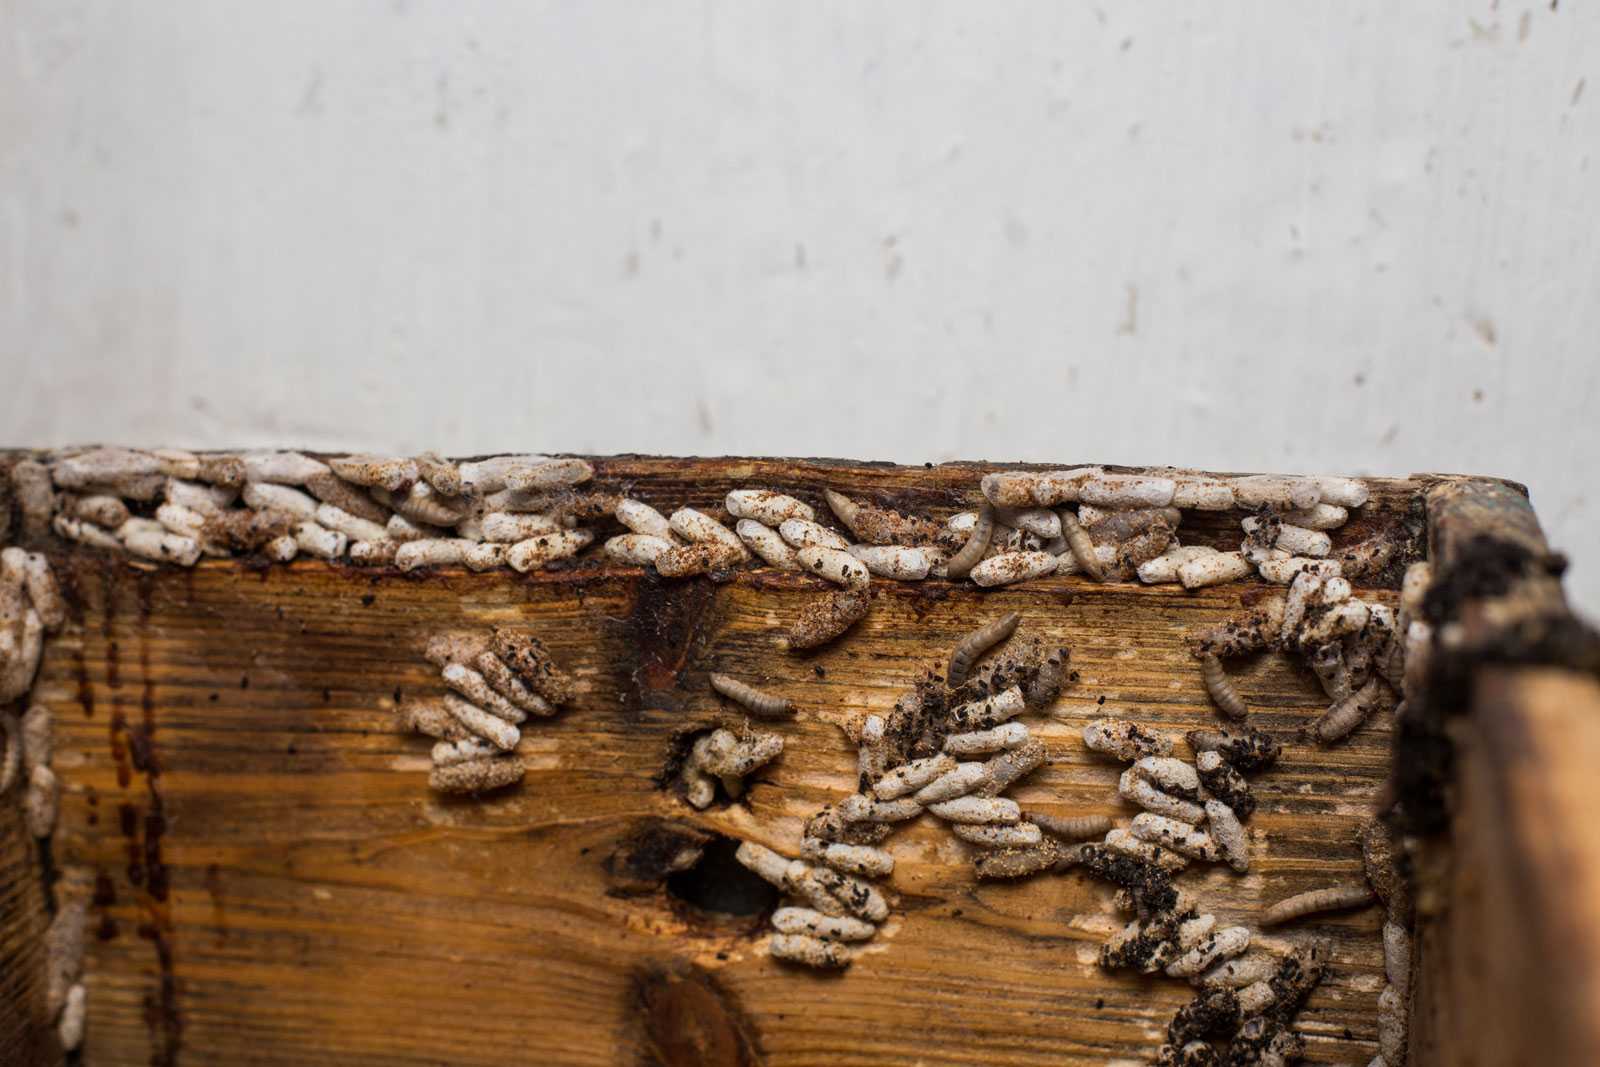 Пчеловодство — 3 формата ведения бизнеса и пошаговый план запуска